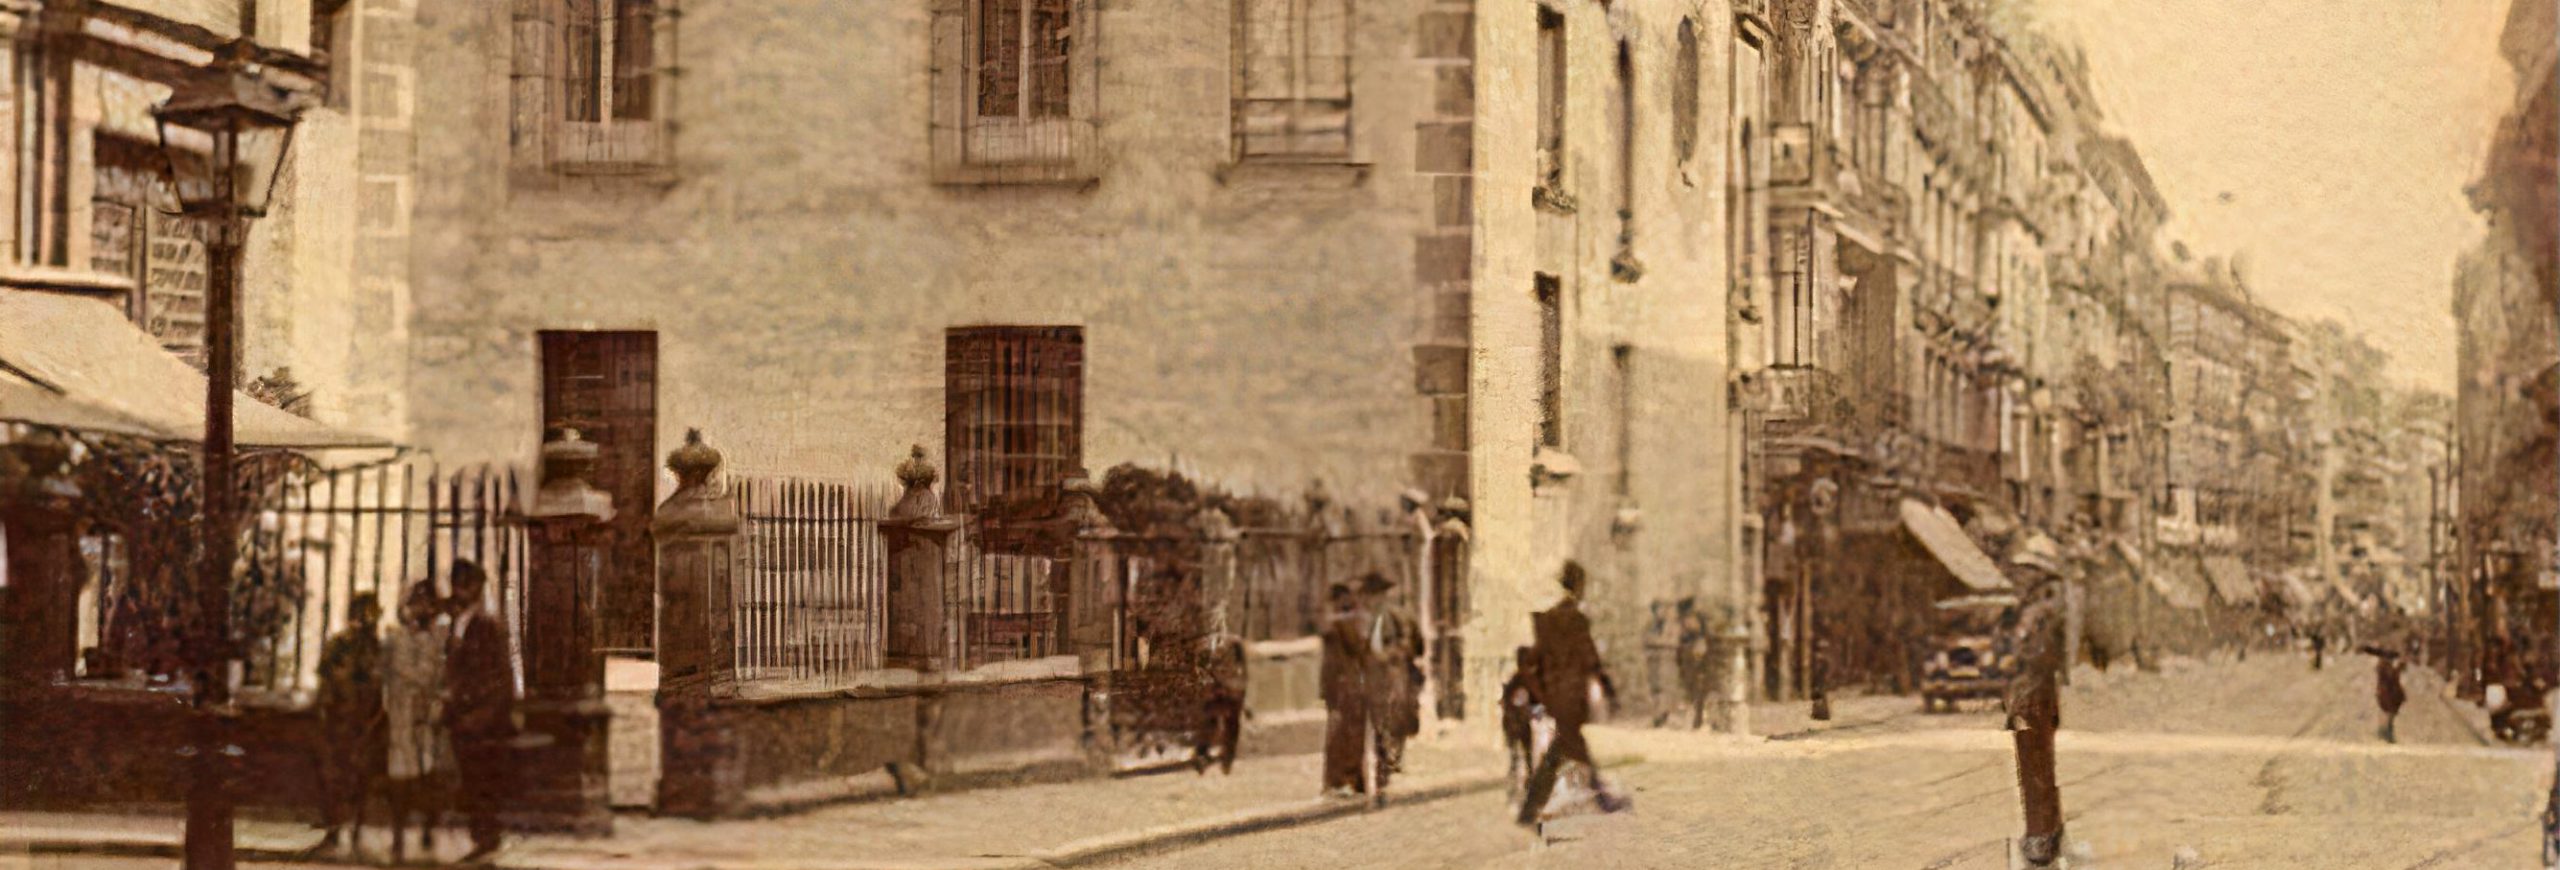 Fotografía antigua de la iglesia vista desde la calle Atocha